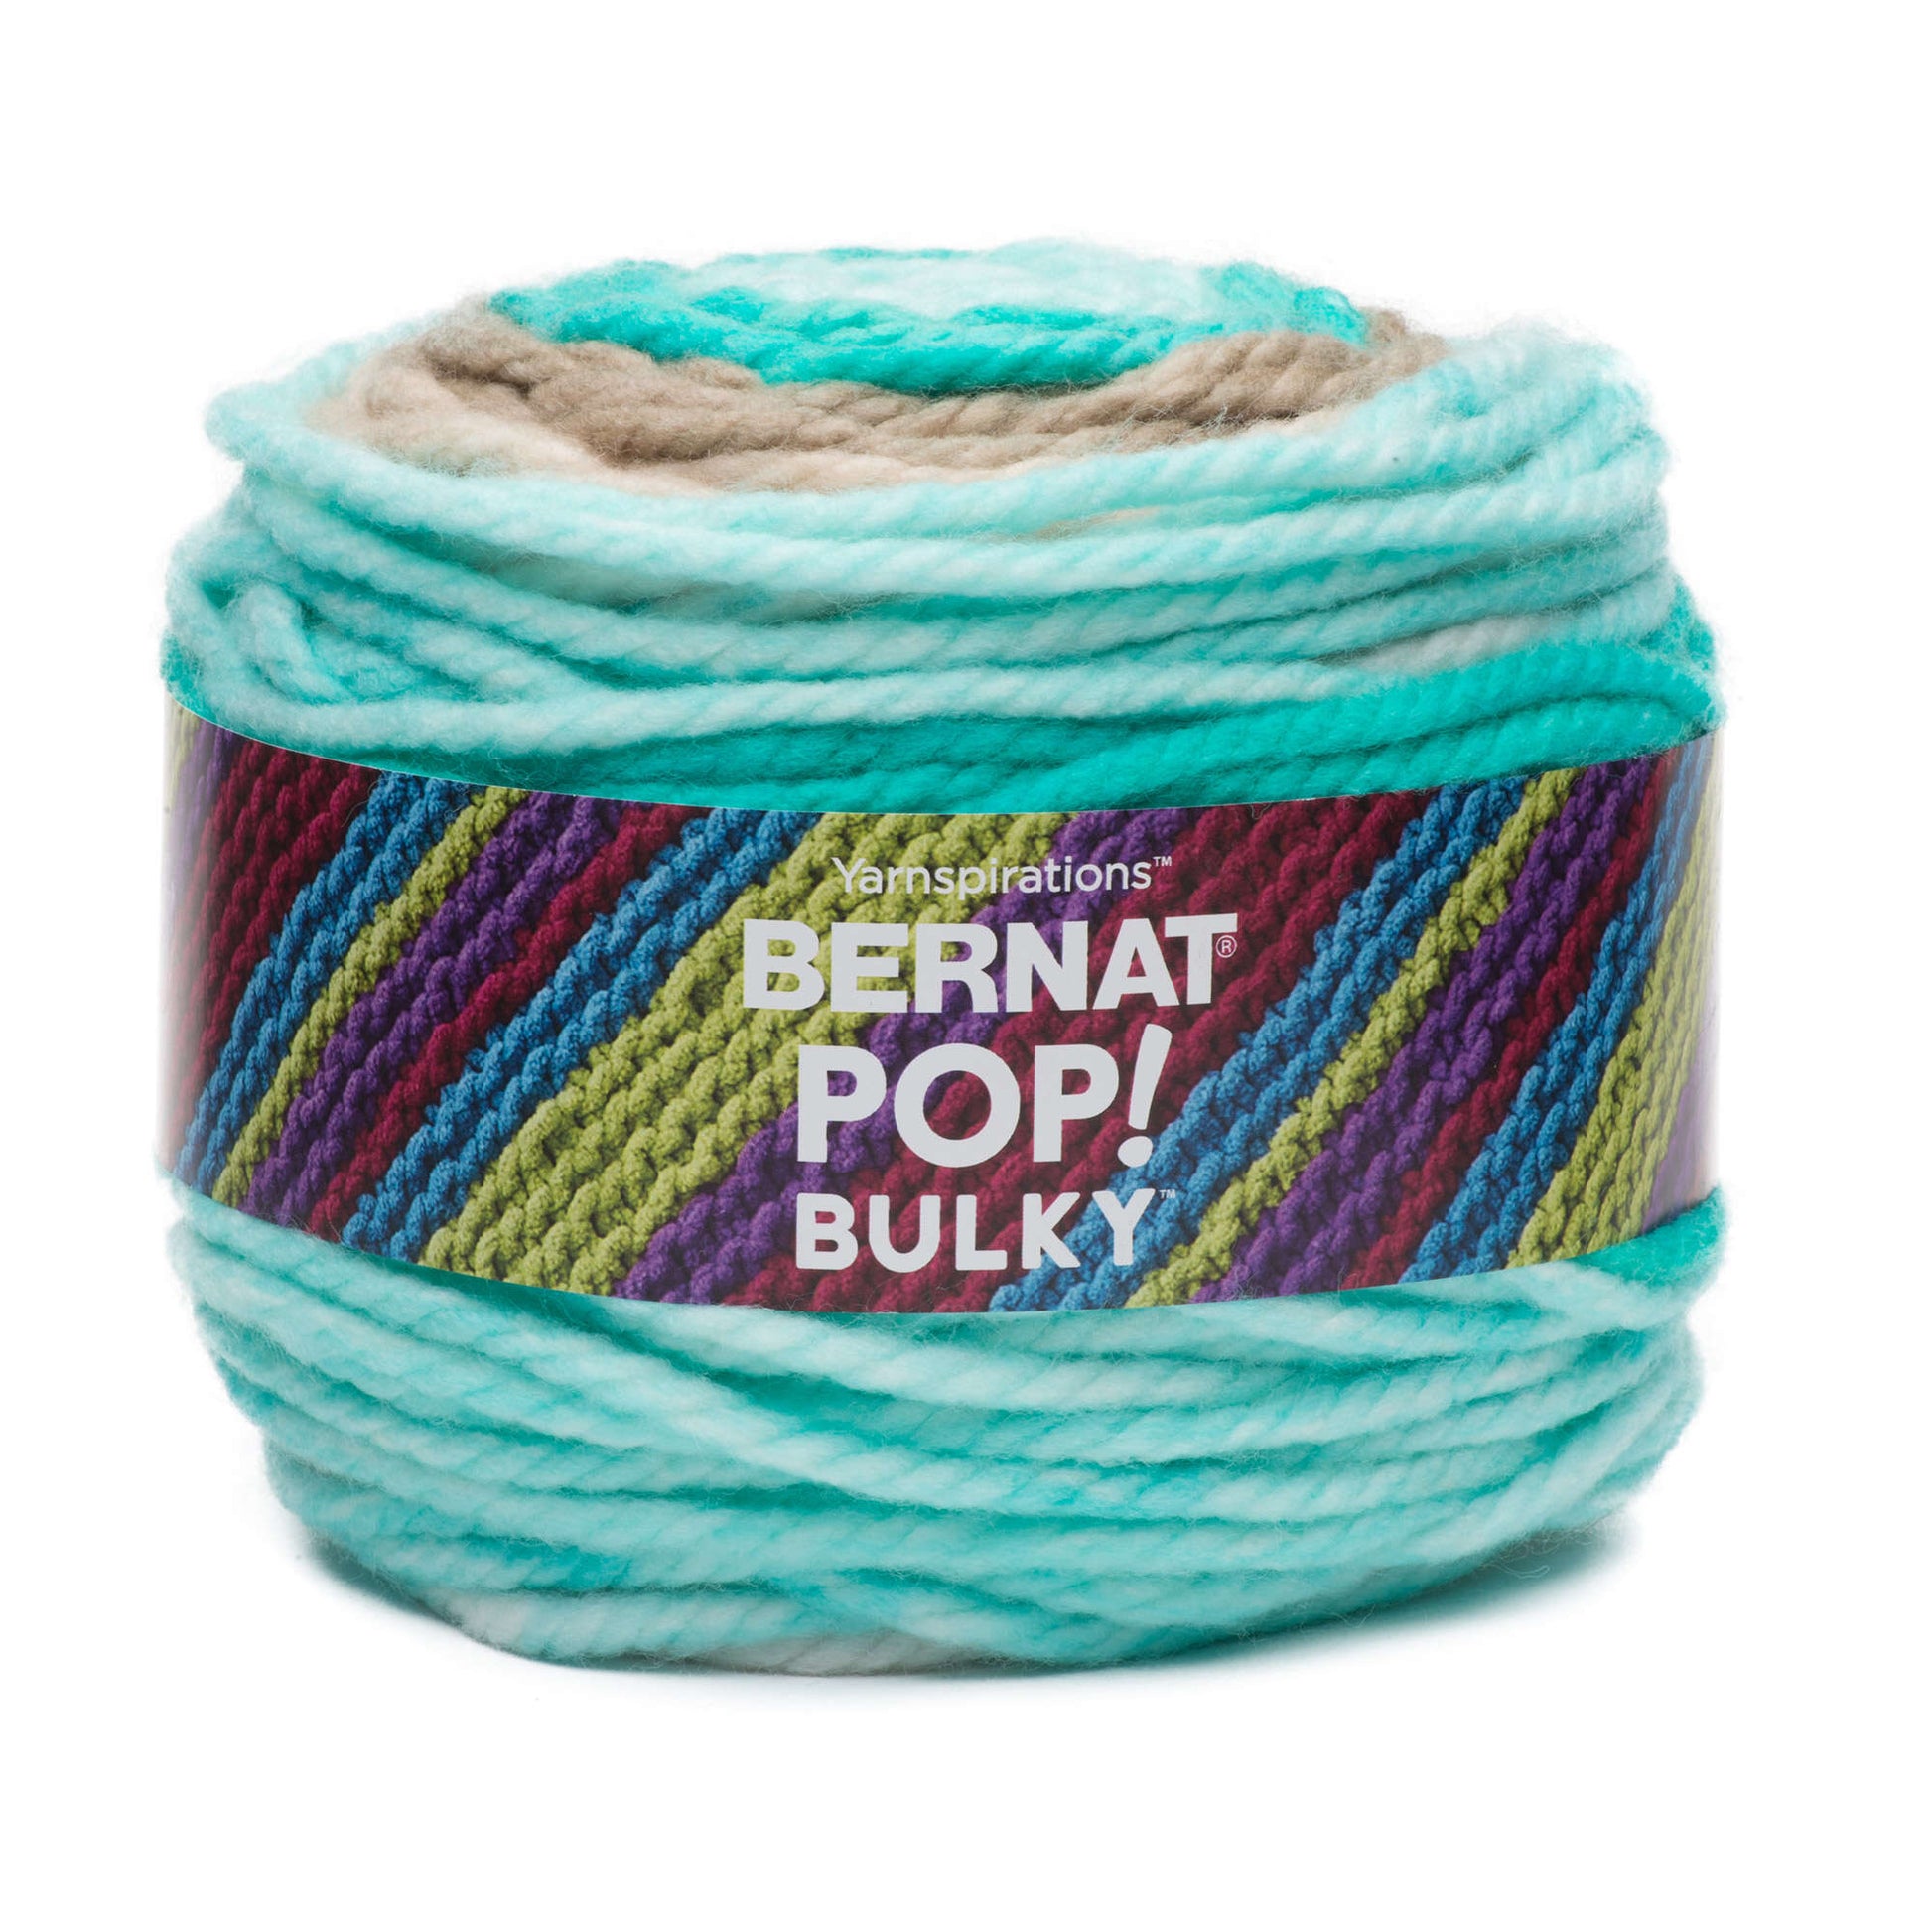 Bernat Pop! Bulky Yarn - Discontinued Shades Carefree Seashore